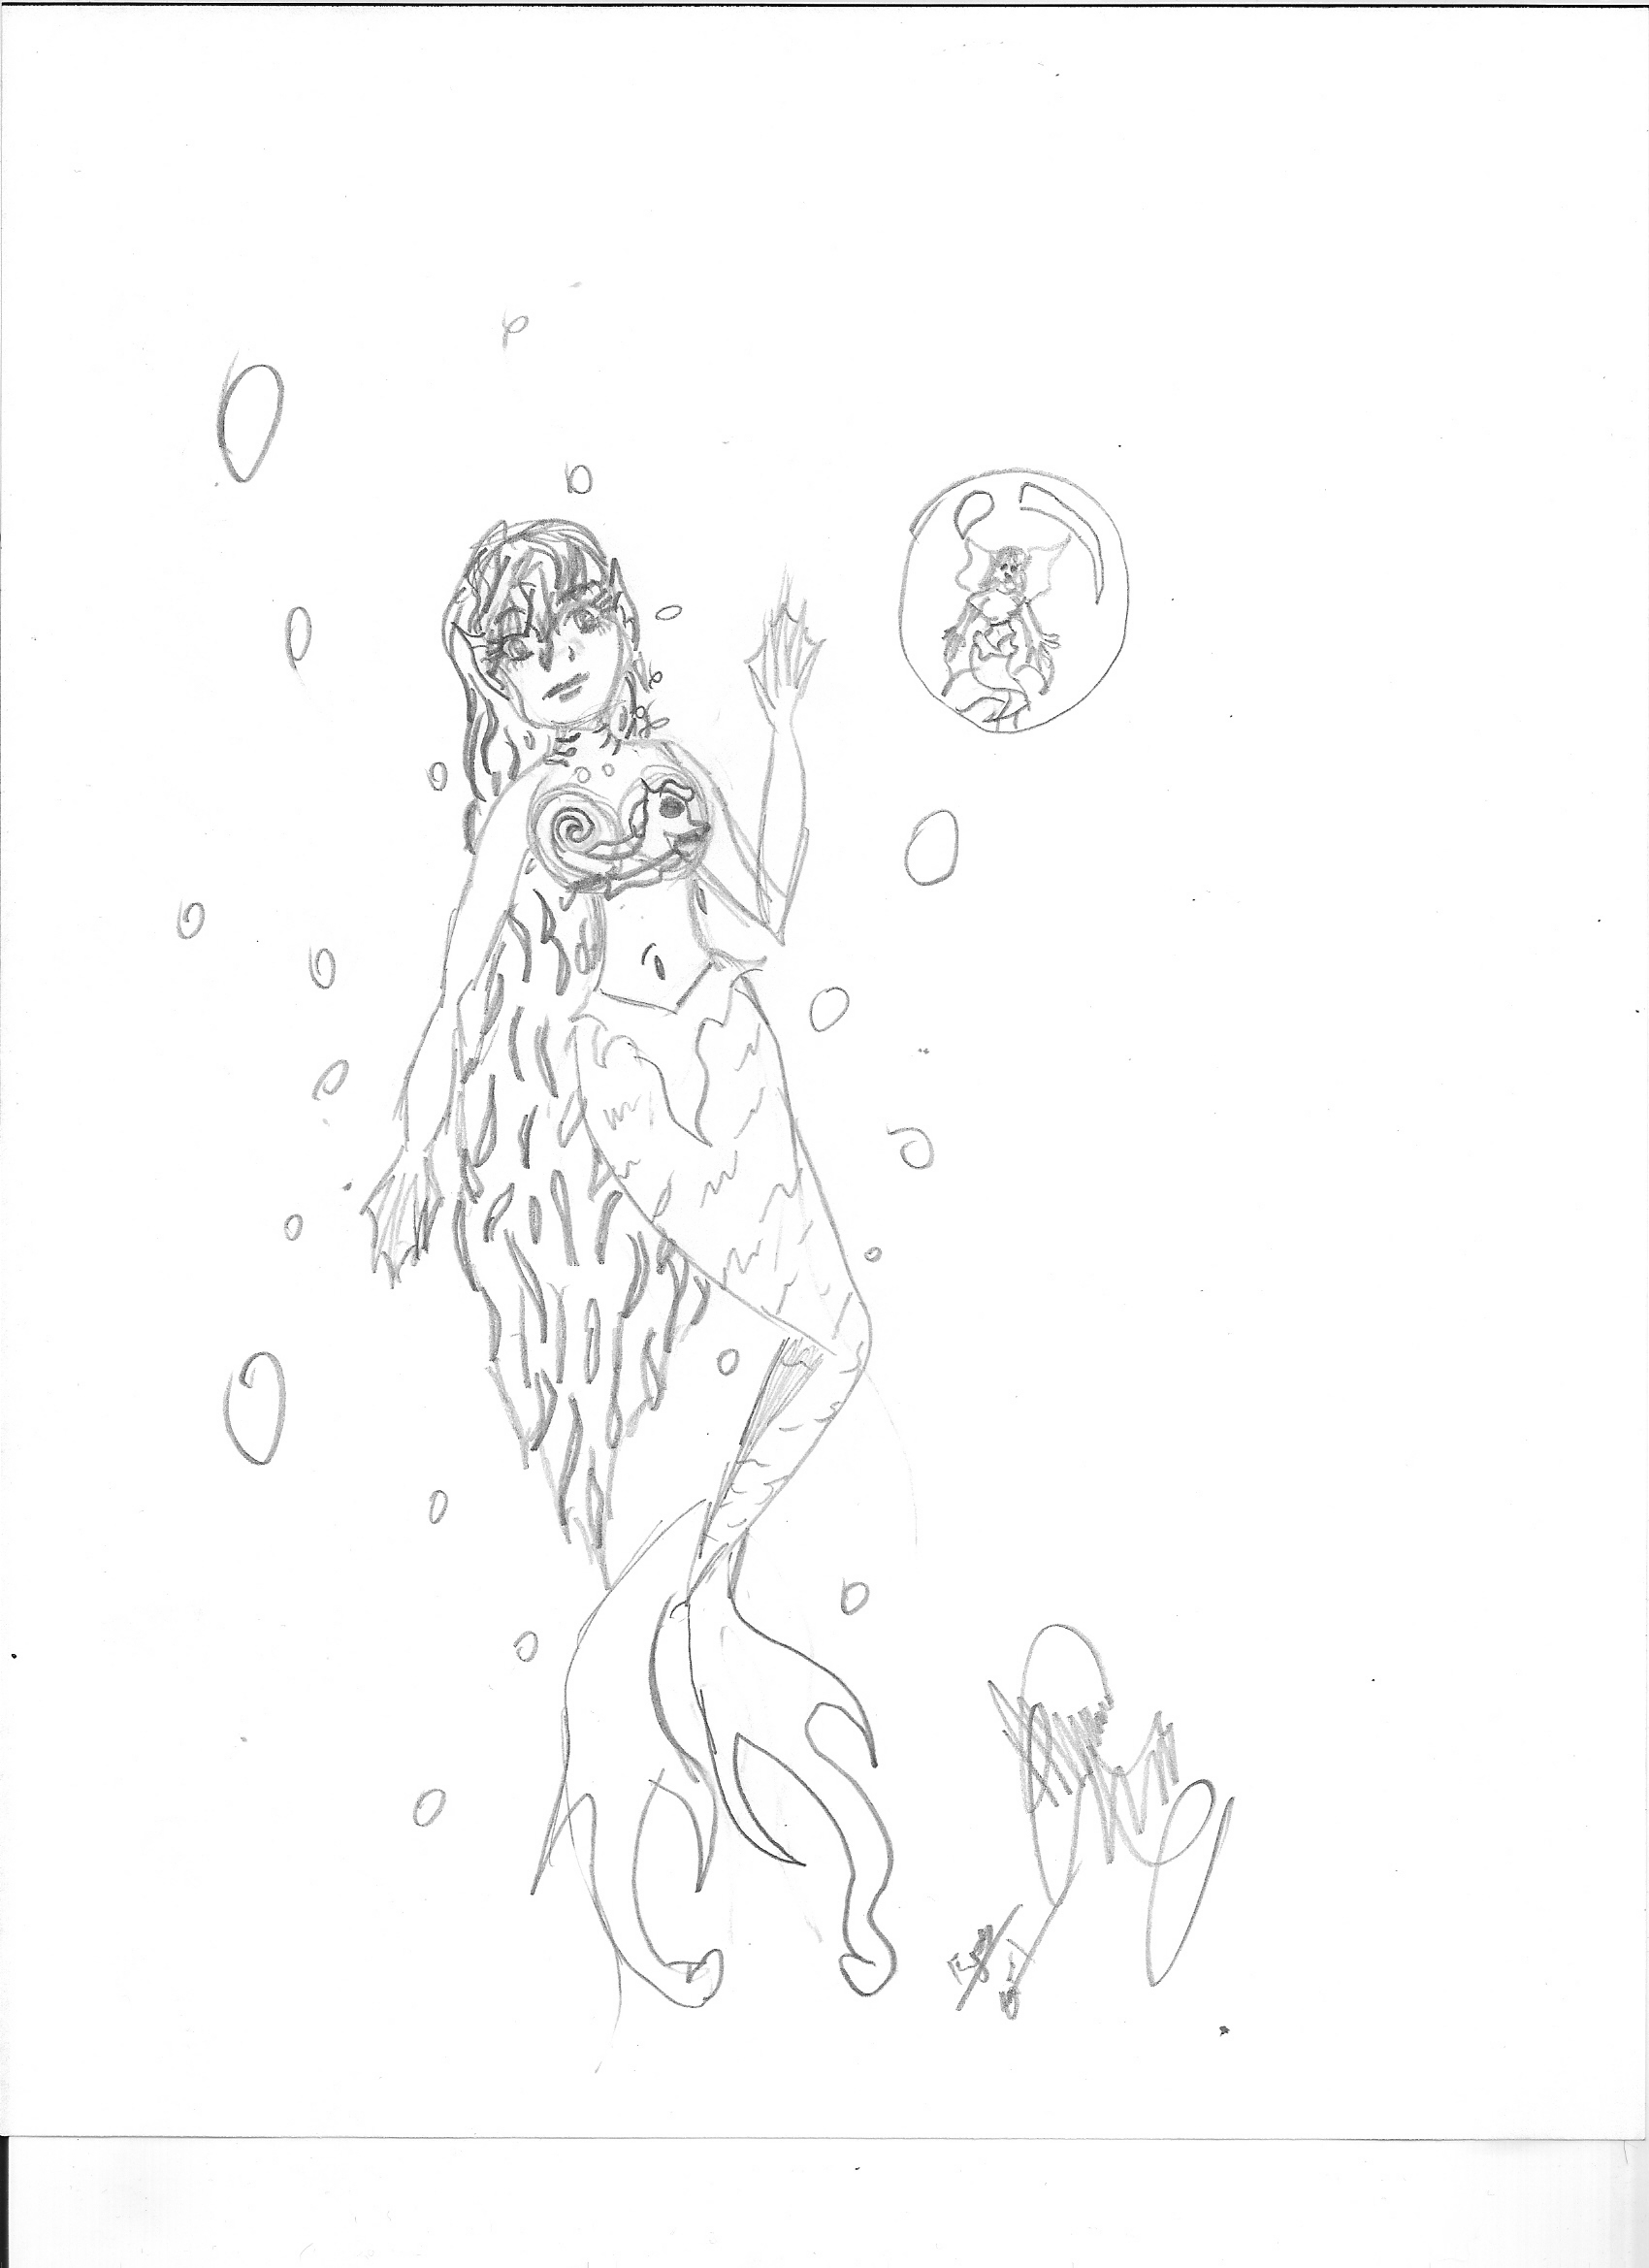 Mermaid and merfairy by KyosGirl